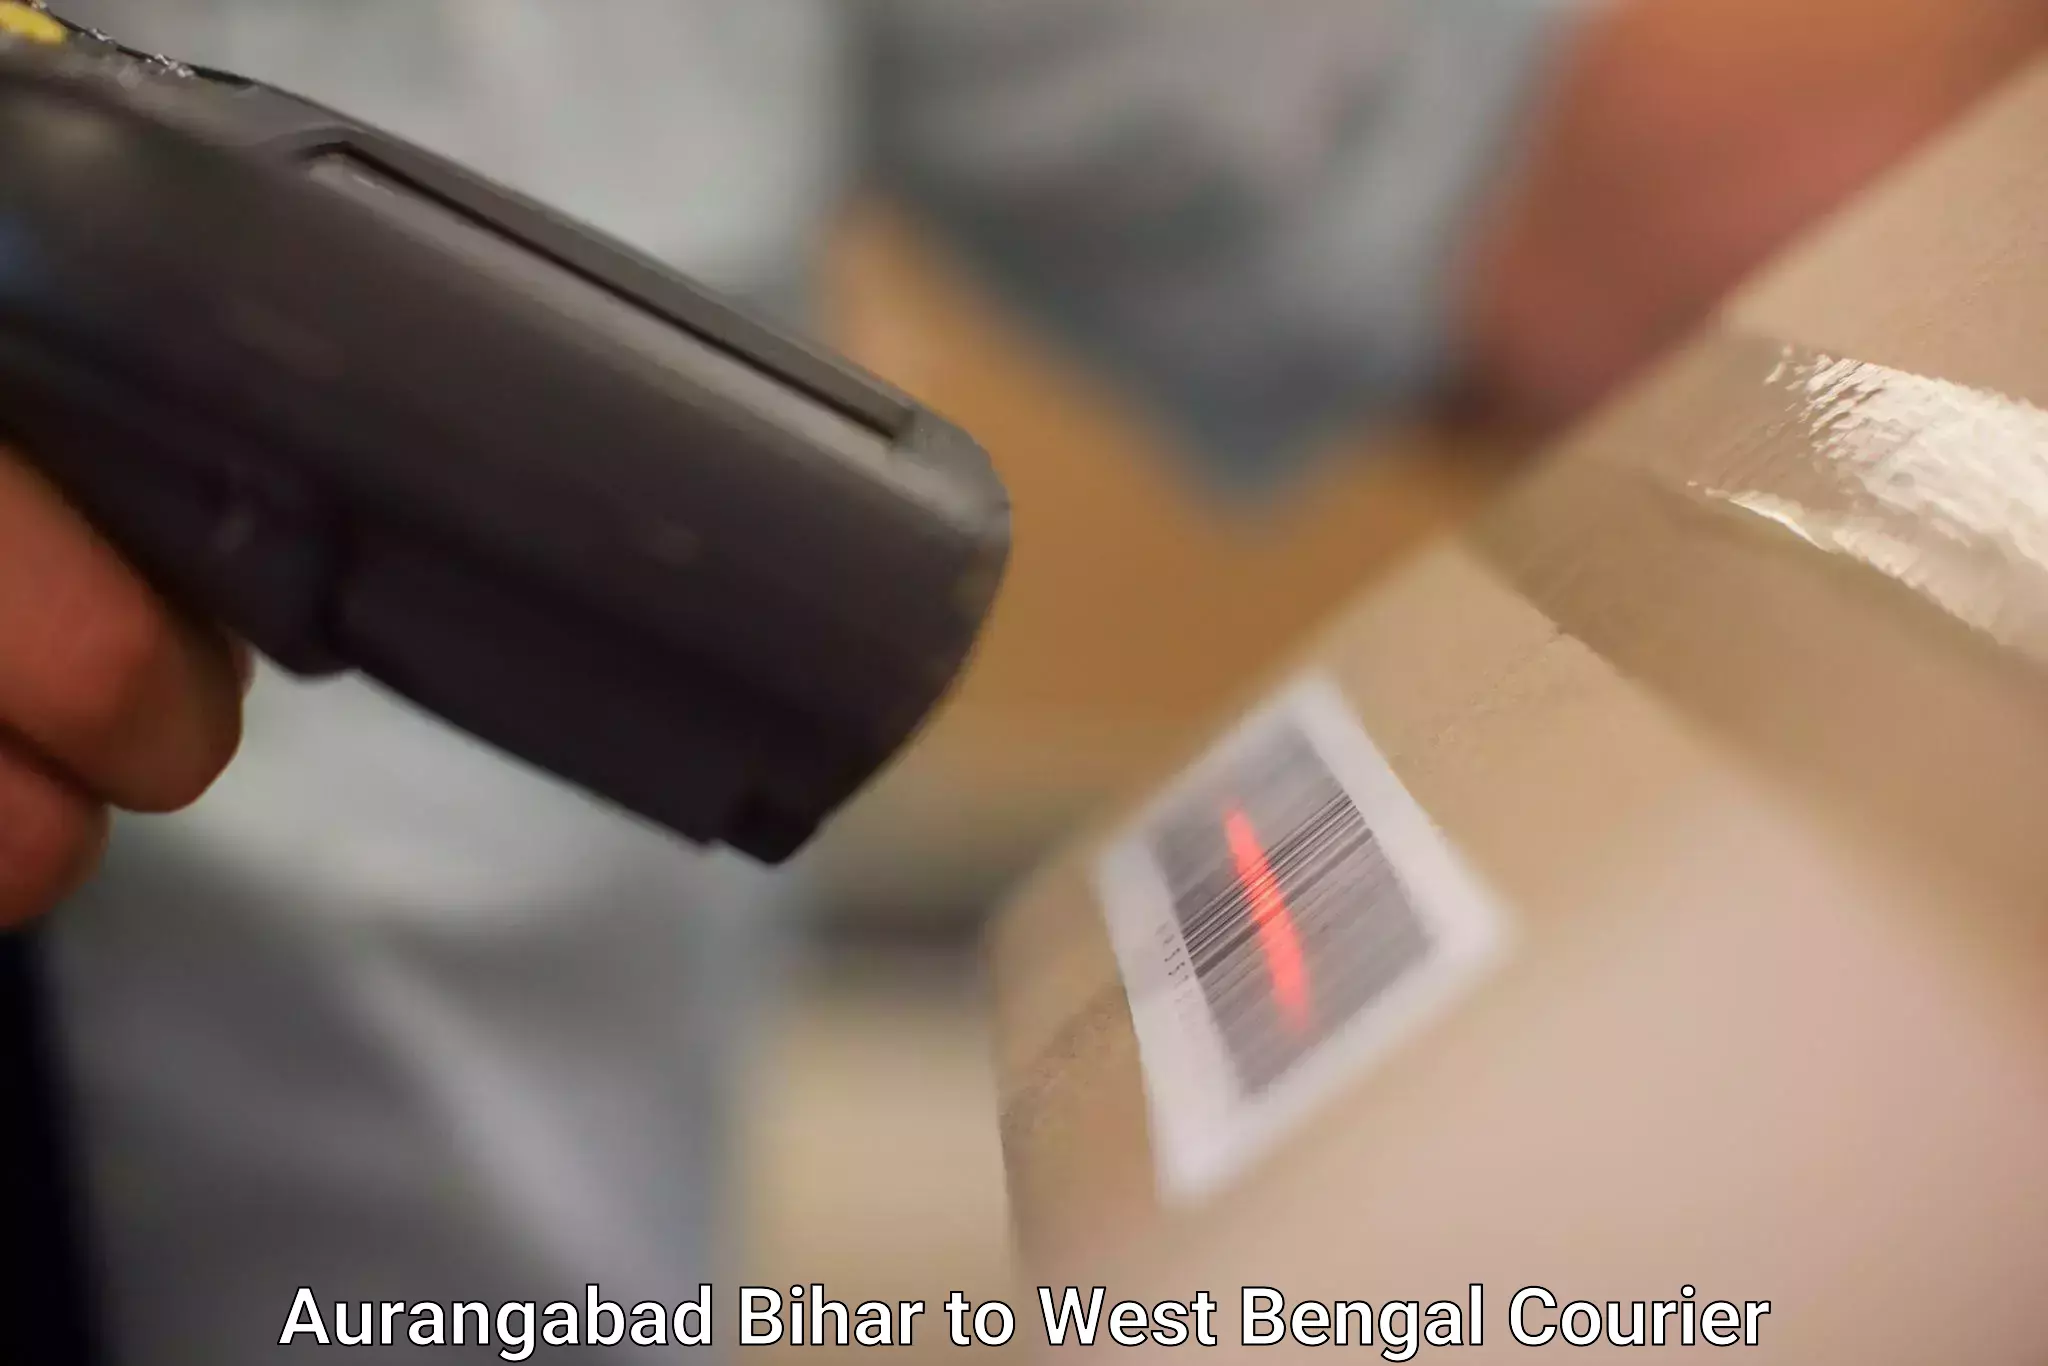 Premium courier services Aurangabad Bihar to Chittaranjan